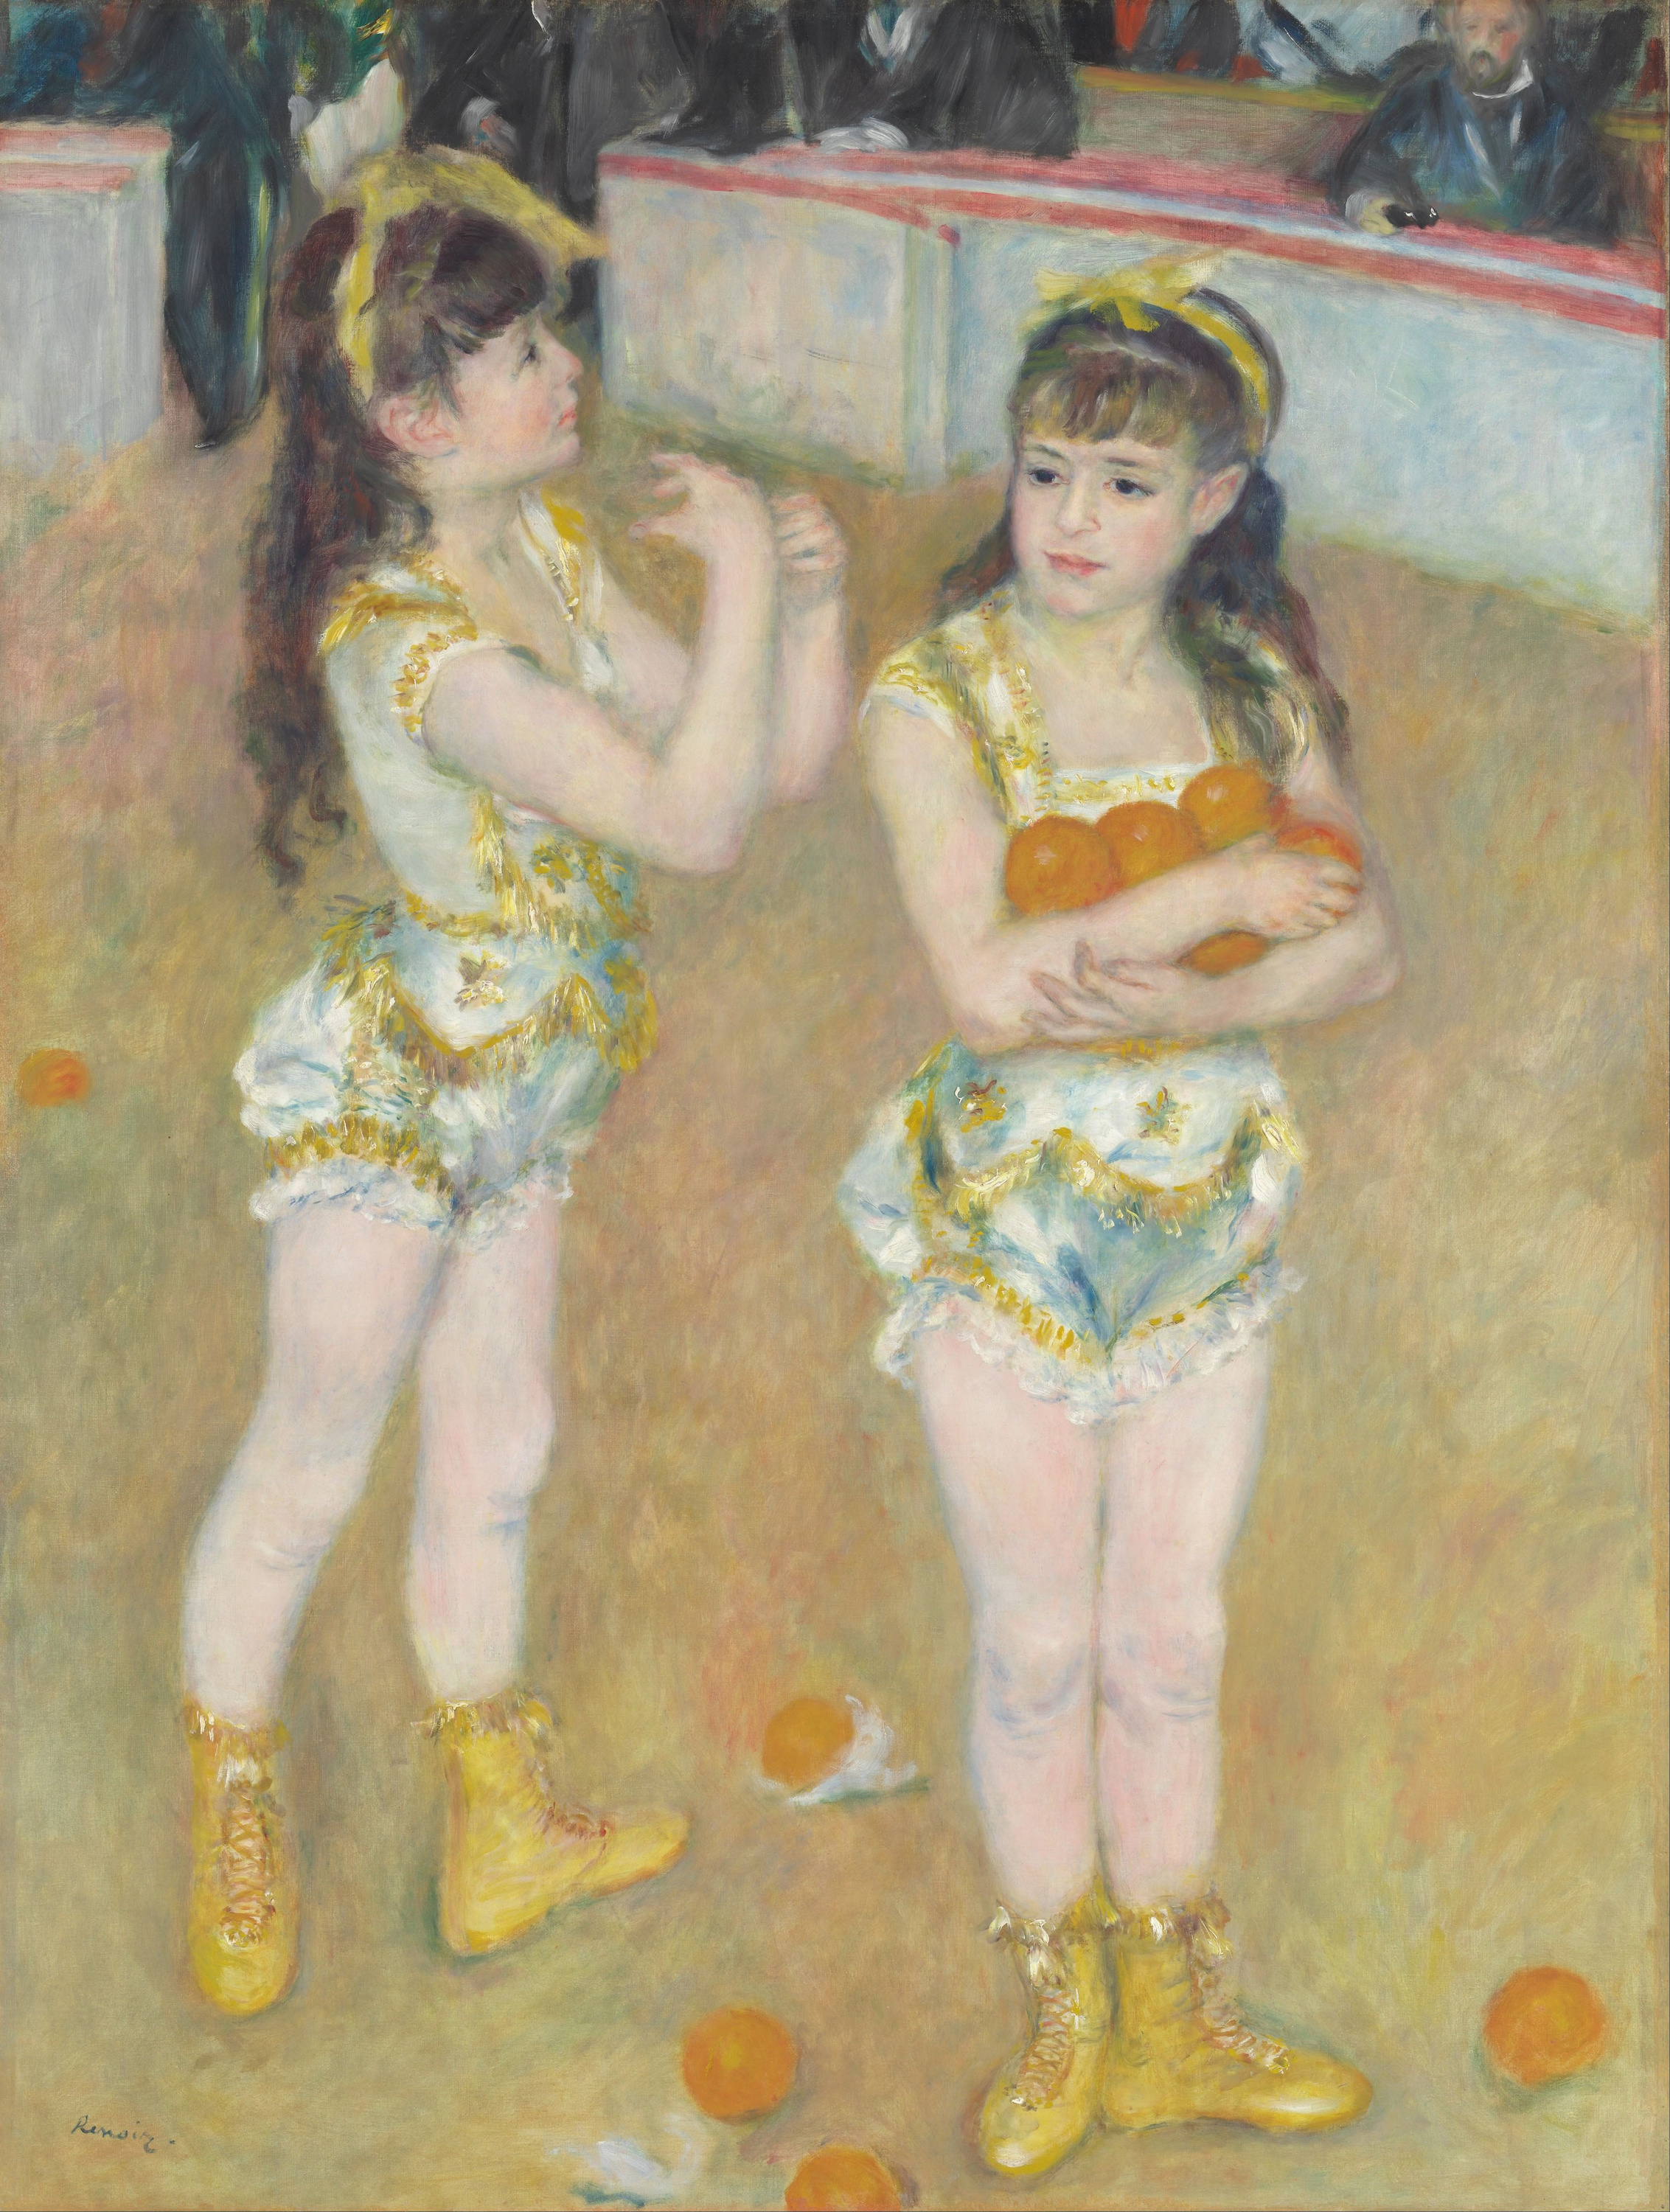 Οι ακροβάτες του Τσίρκου Φερνάντο  (Φρανσίσκα και Αντζελίνα Βάρτενμπεργκ) by Pierre-Auguste Renoir - 1879 - 131.2 × 99.2 cm 